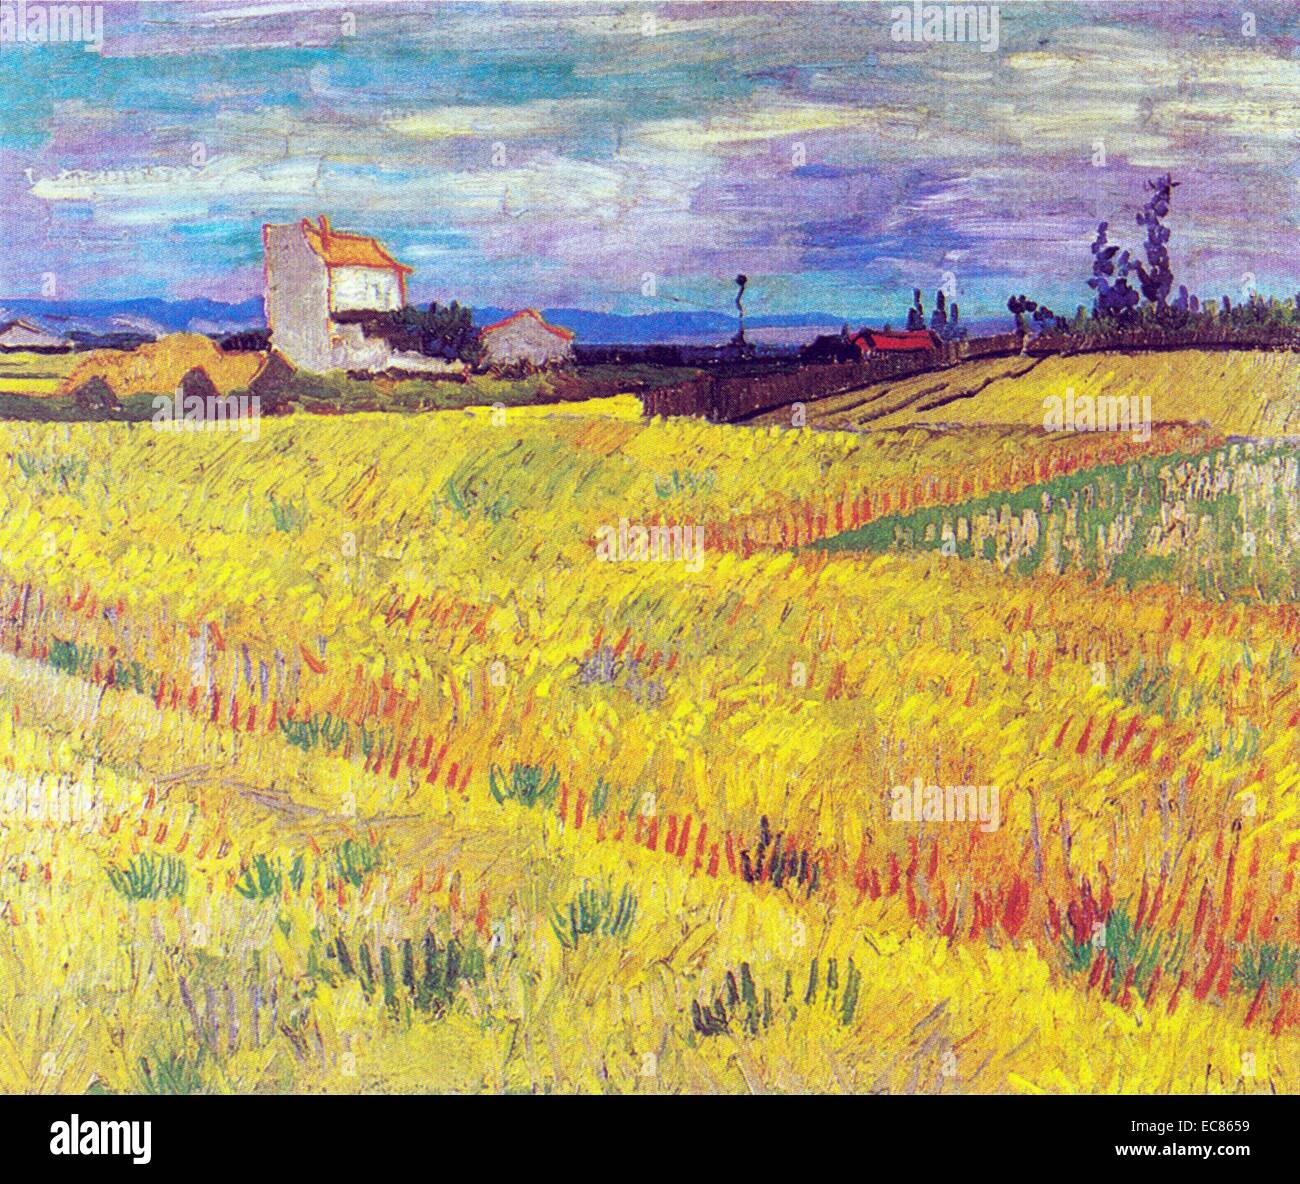 Wheatfield' von Vincent Van Gogh (1853-1890) eine post-impressionistischen Maler niederländischer Herkunft. Vom 1889. Stockfoto